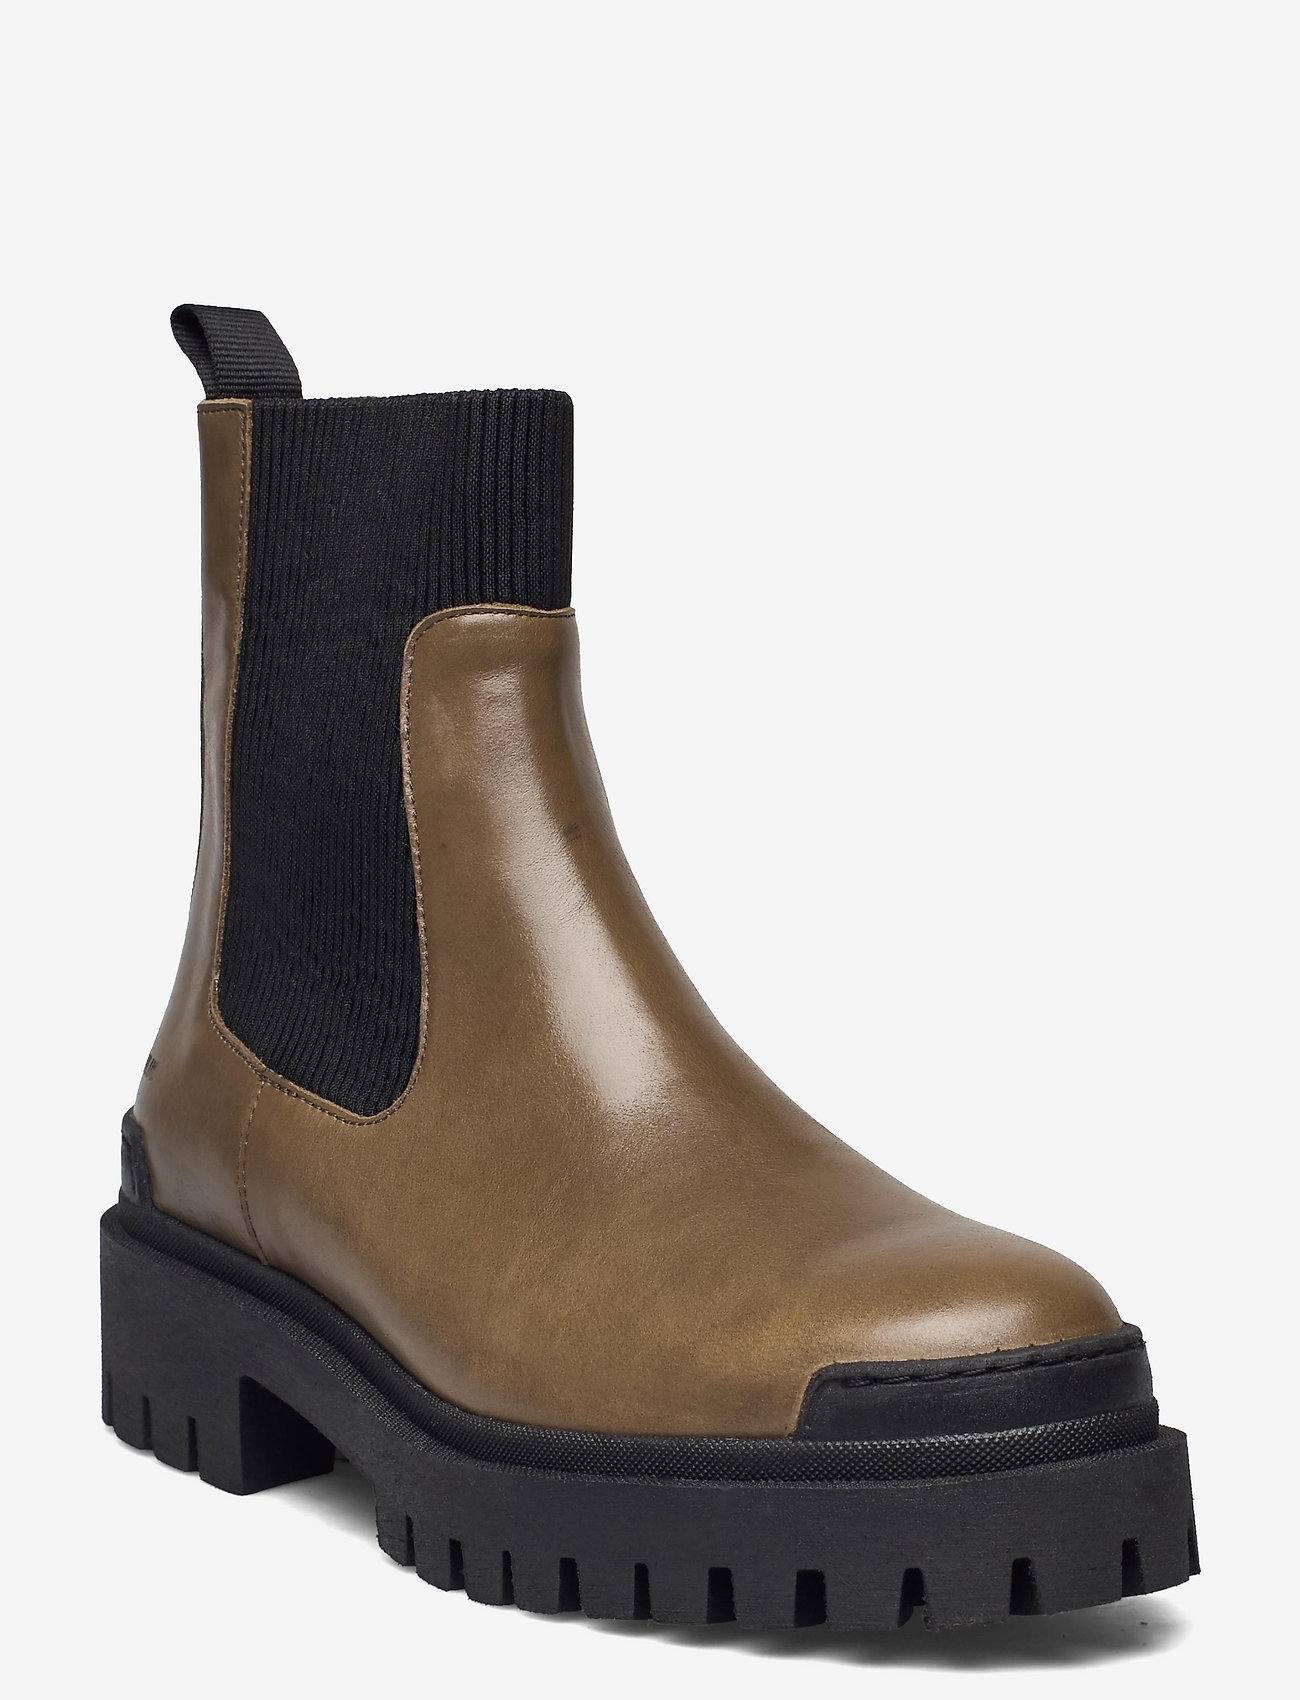 ANGULUS - Boots - flat - chelsea-saapad - 1841/019 dark olive/black - 0